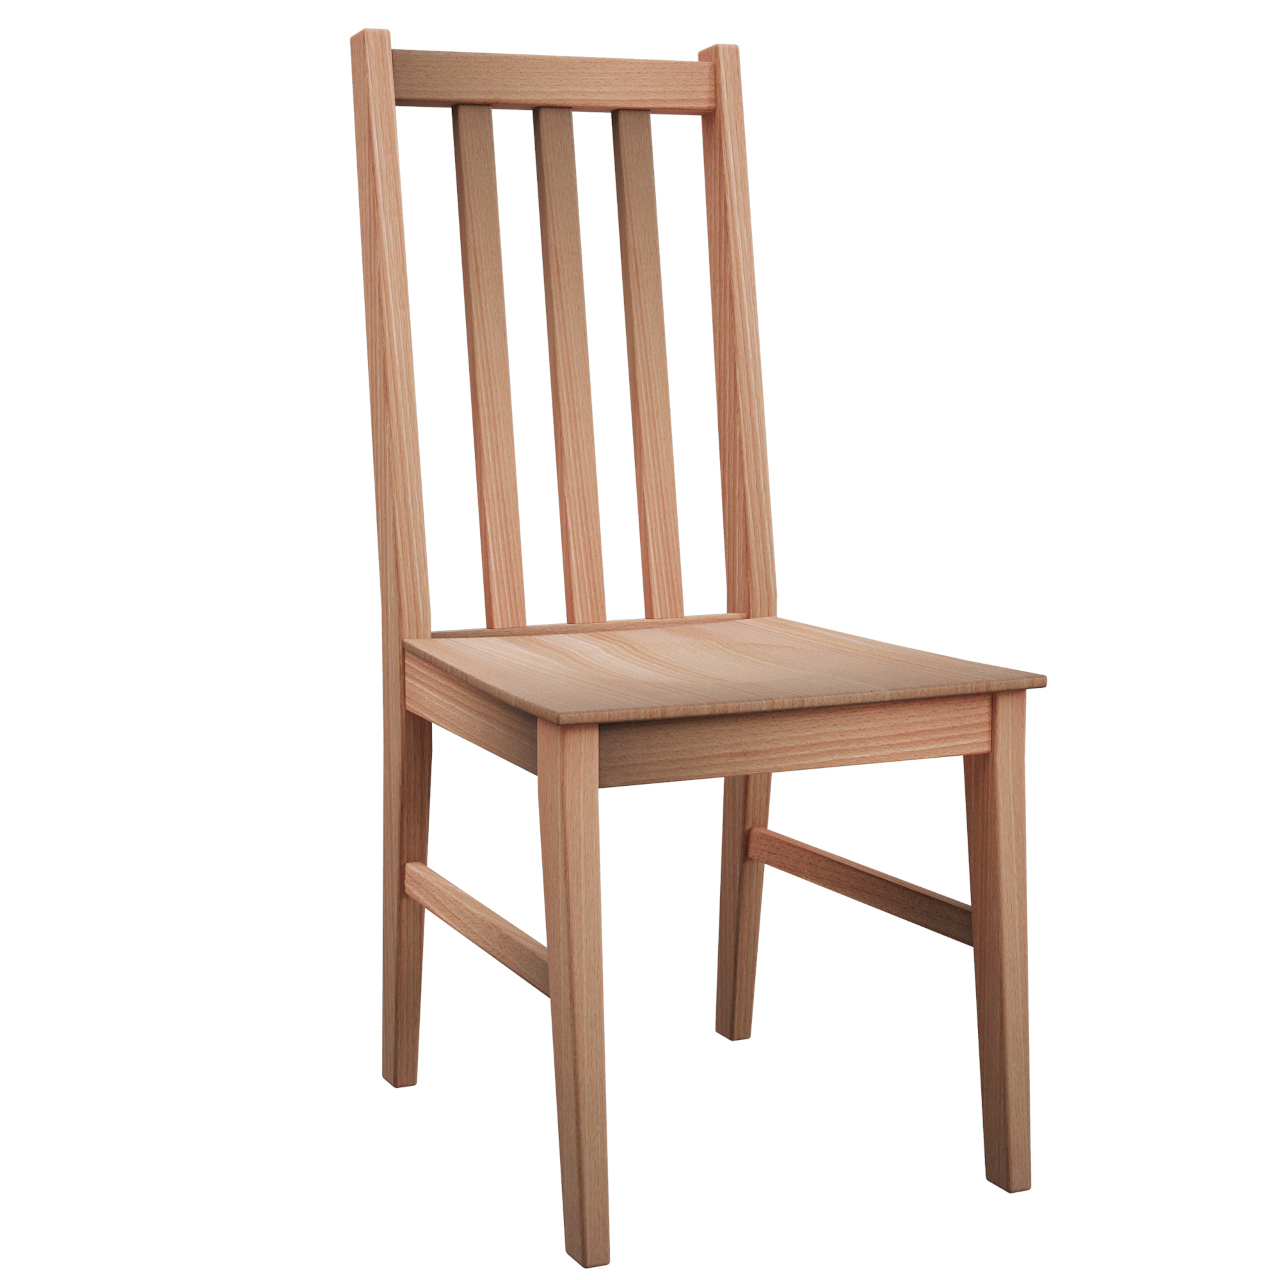 Chair BOS 10D beech